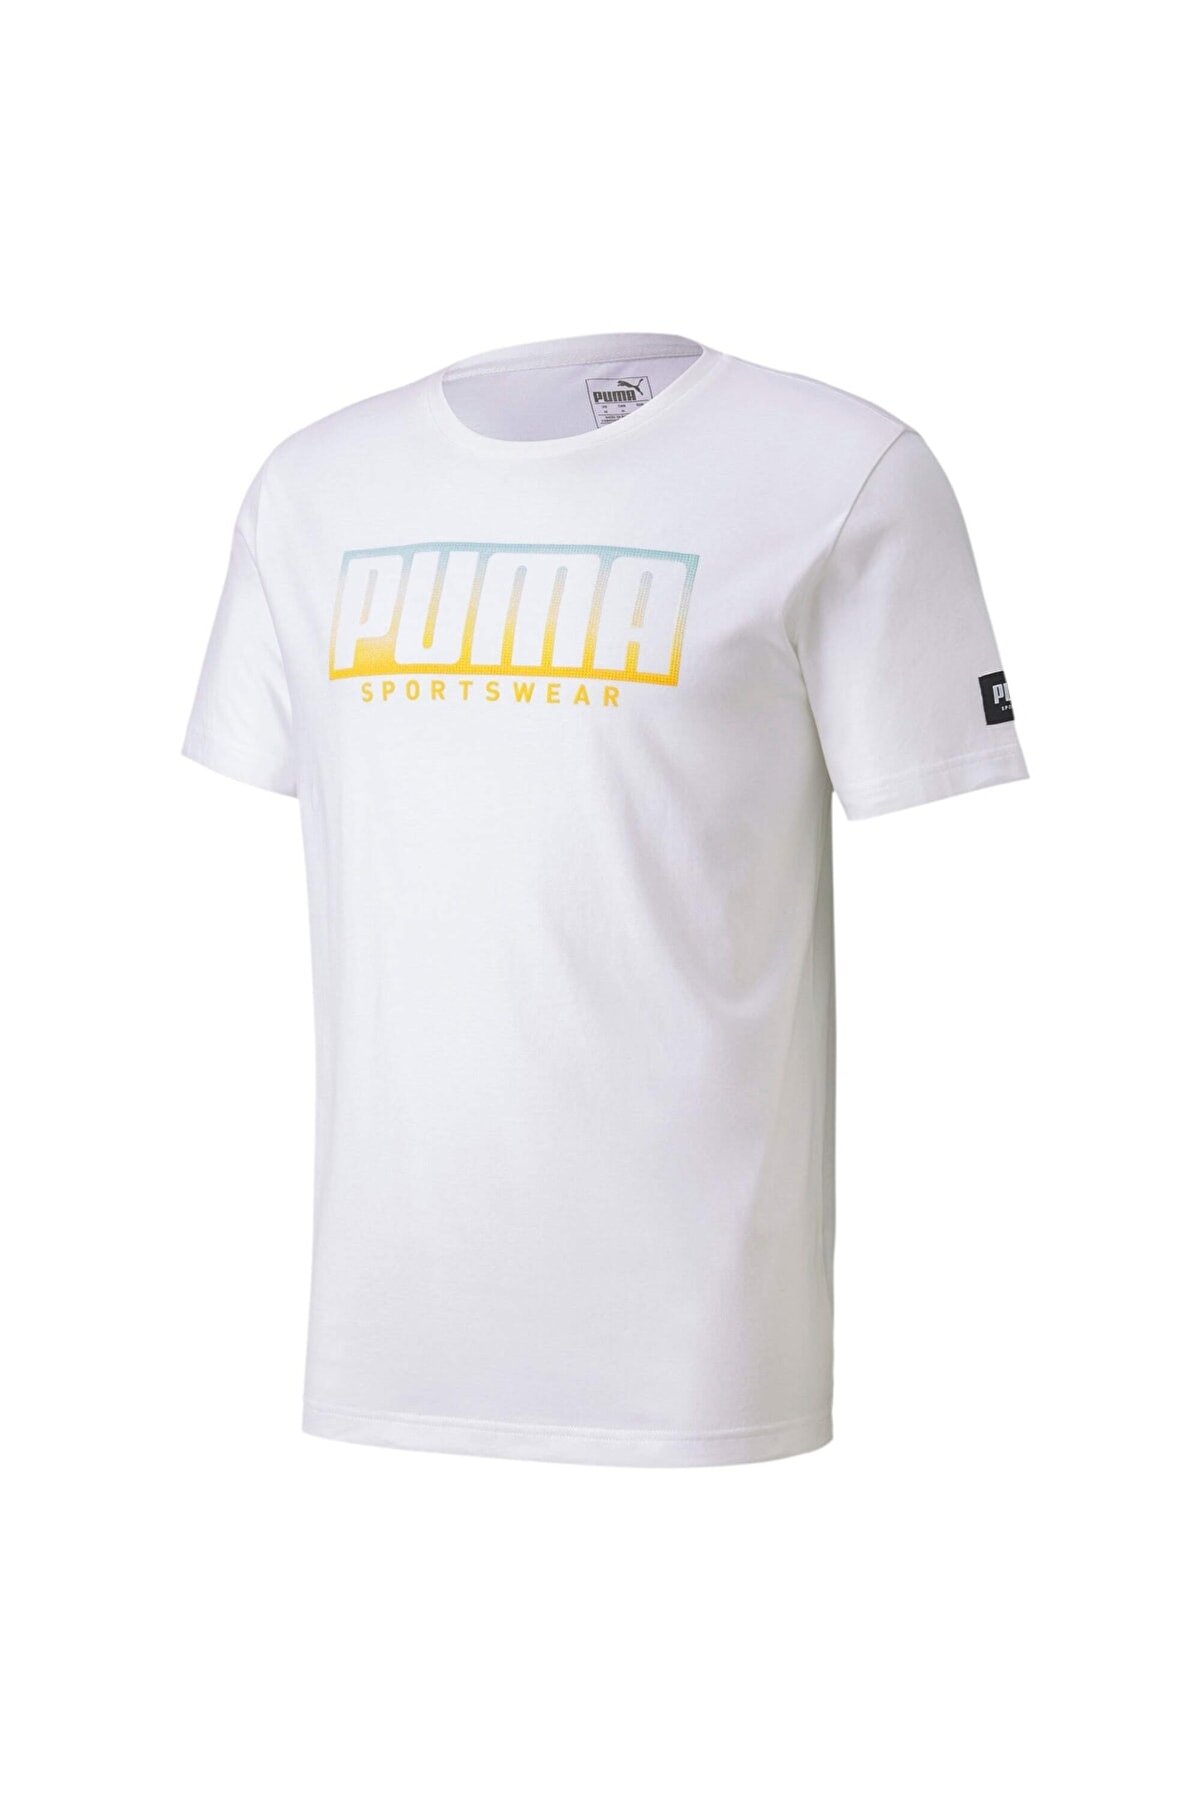 Puma Erkek Beyaz Logo Baskılı T-Shirt 58133352